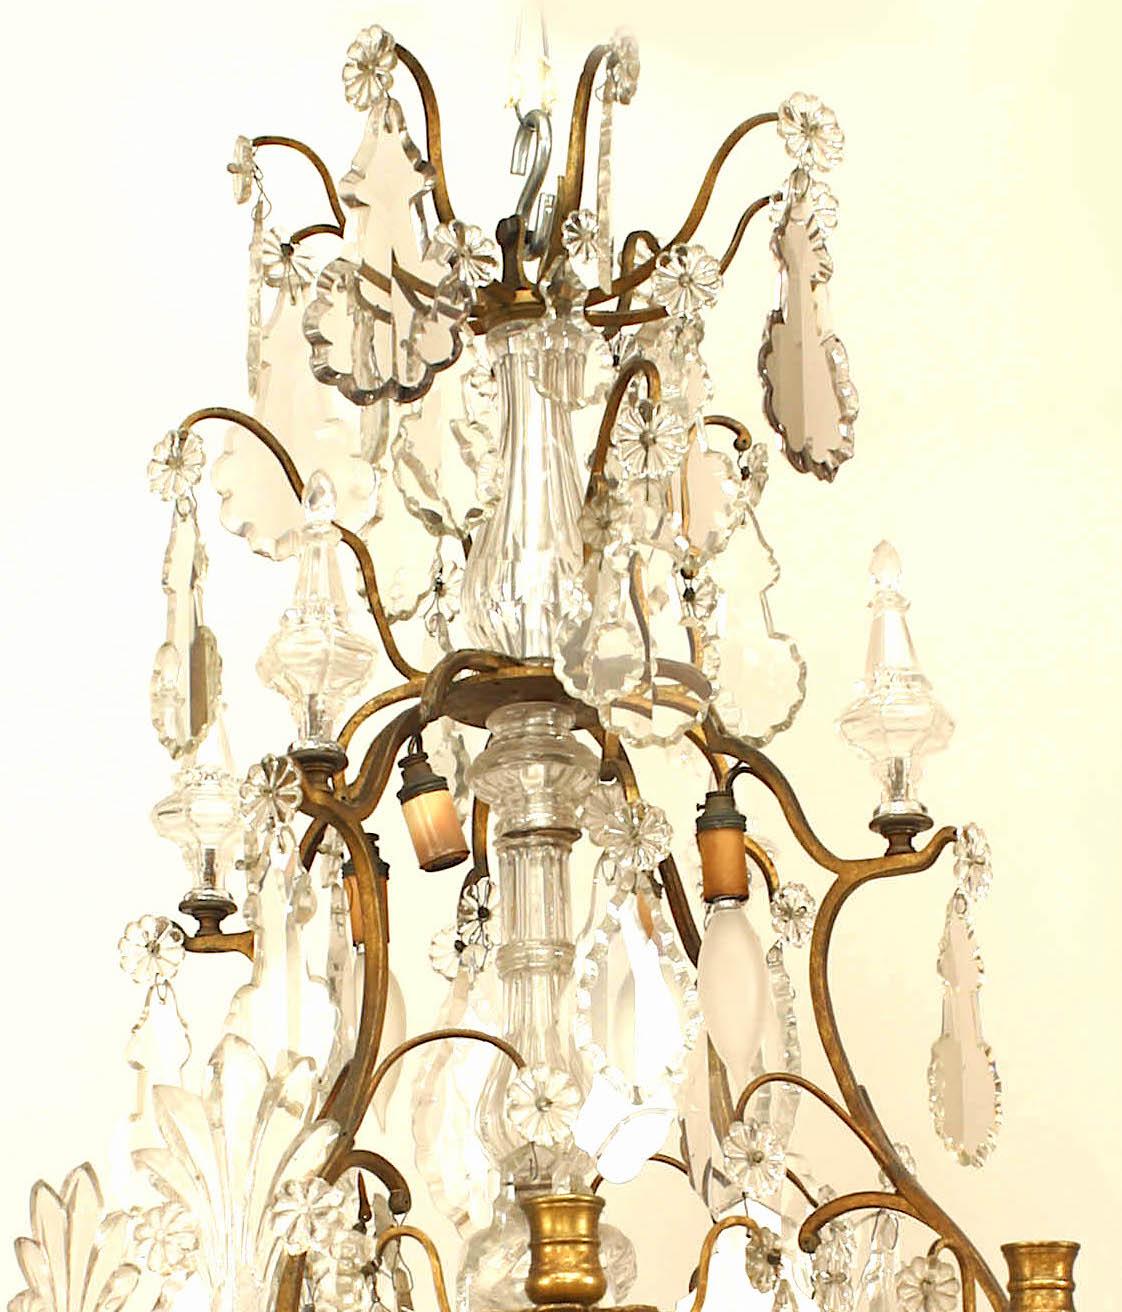 Französischer Kronleuchter im Louis XV-Stil aus Bronze und Kristall mit verschiedenen Kristalltropfen und Endstücken sowie 8 Kerzenhaltern und 8 Lampenfassungen.
